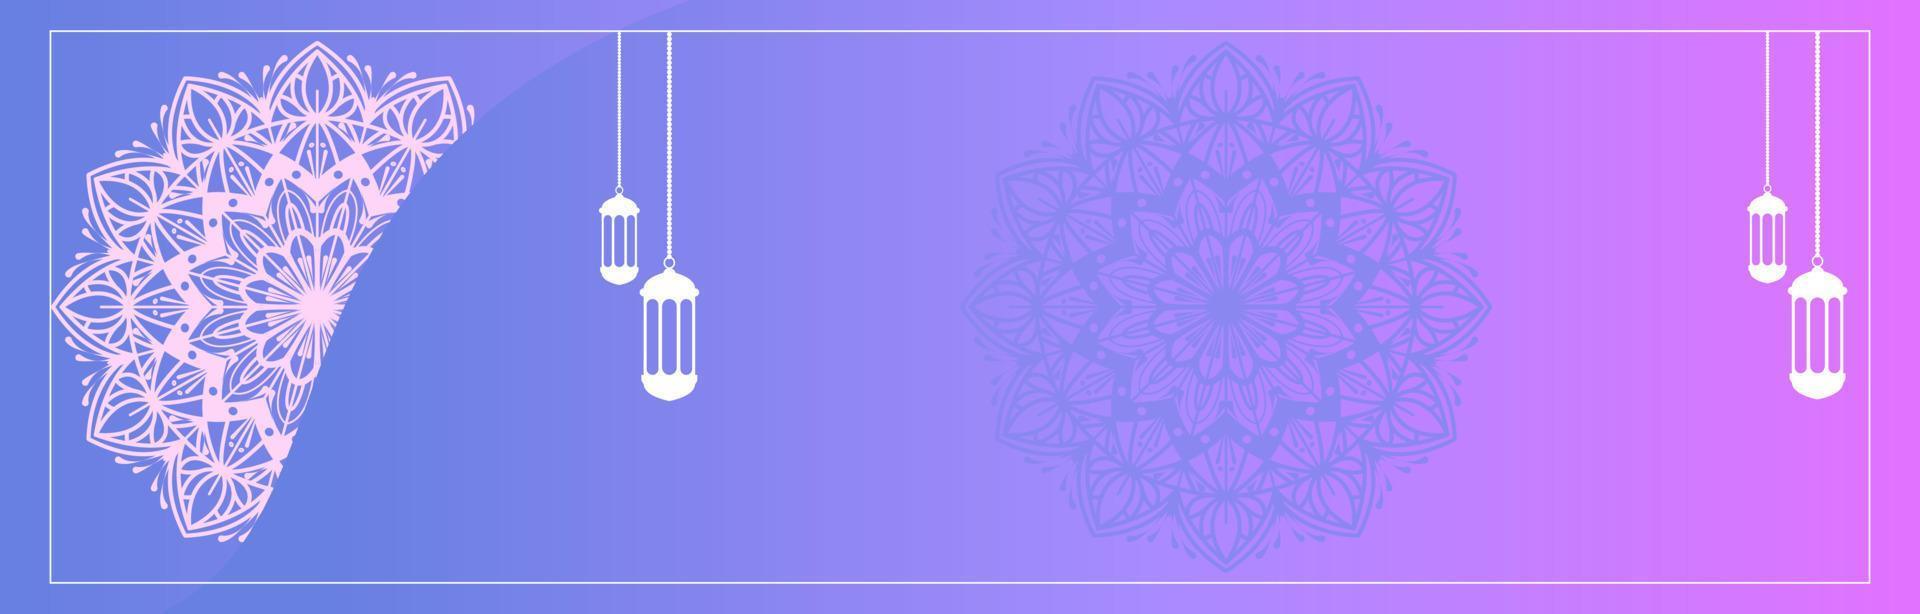 gráficos vetoriais de fundo islâmico com elementos étnicos de mandala árabe para eid, ramadan kareem, muharram ou eid mubarak banners vetor